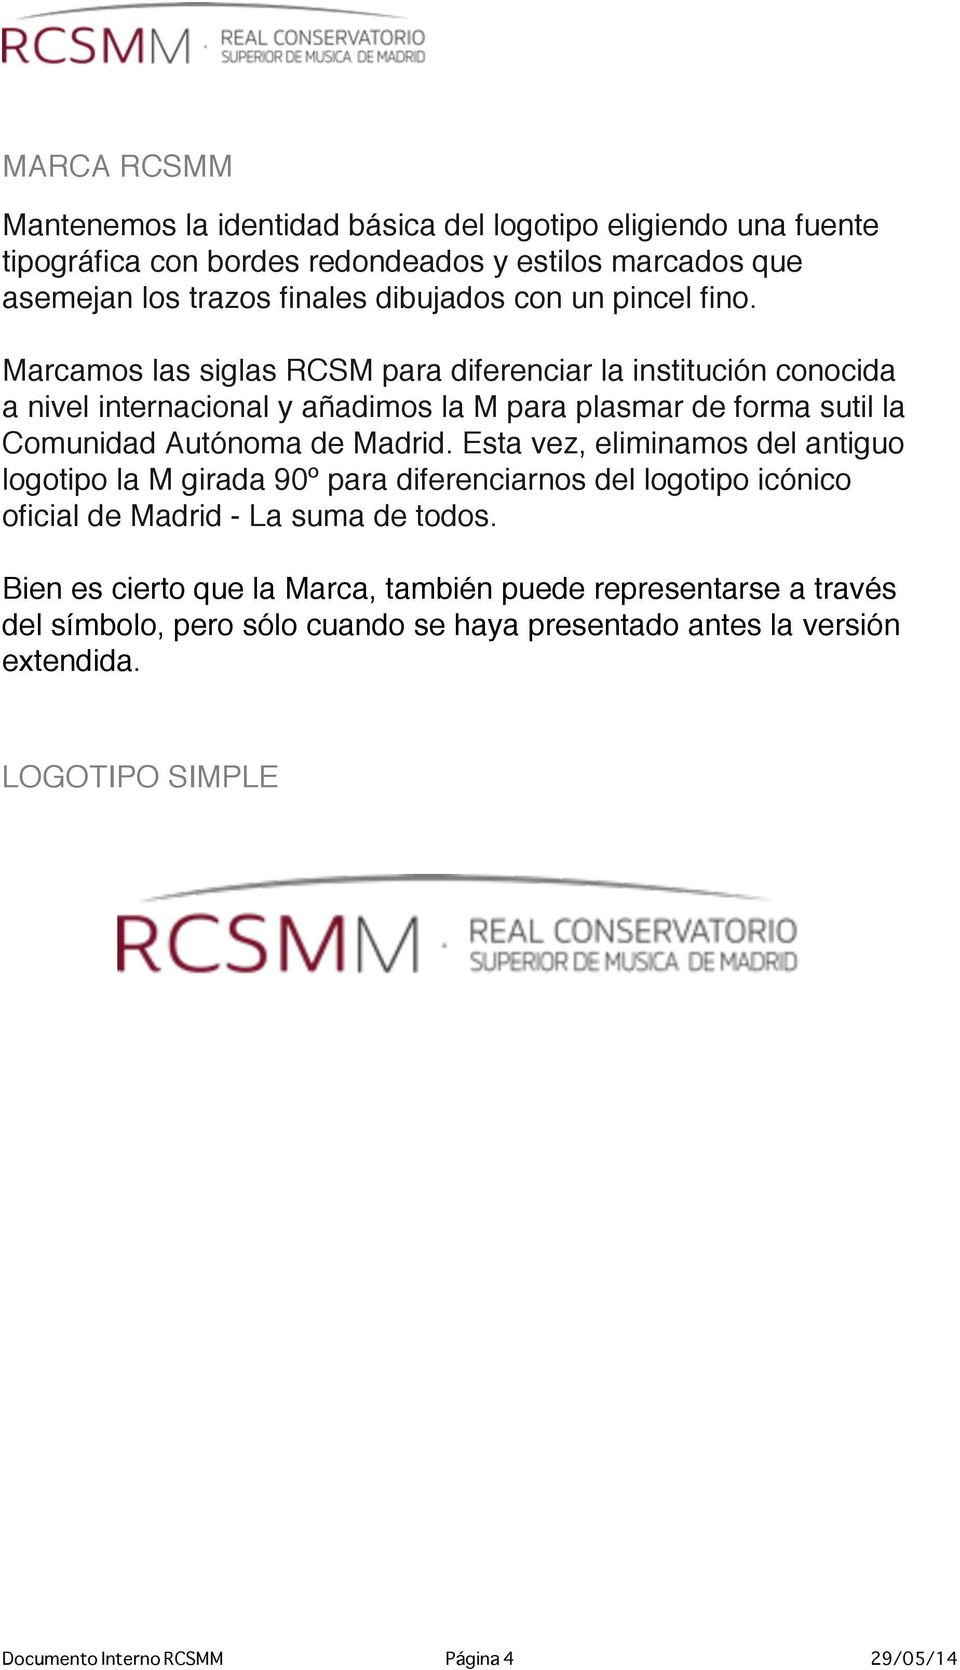 Marcamos las siglas RCSM para diferenciar la institución conocida a nivel internacional y añadimos la M para plasmar de forma sutil la Comunidad Autónoma de Madrid.